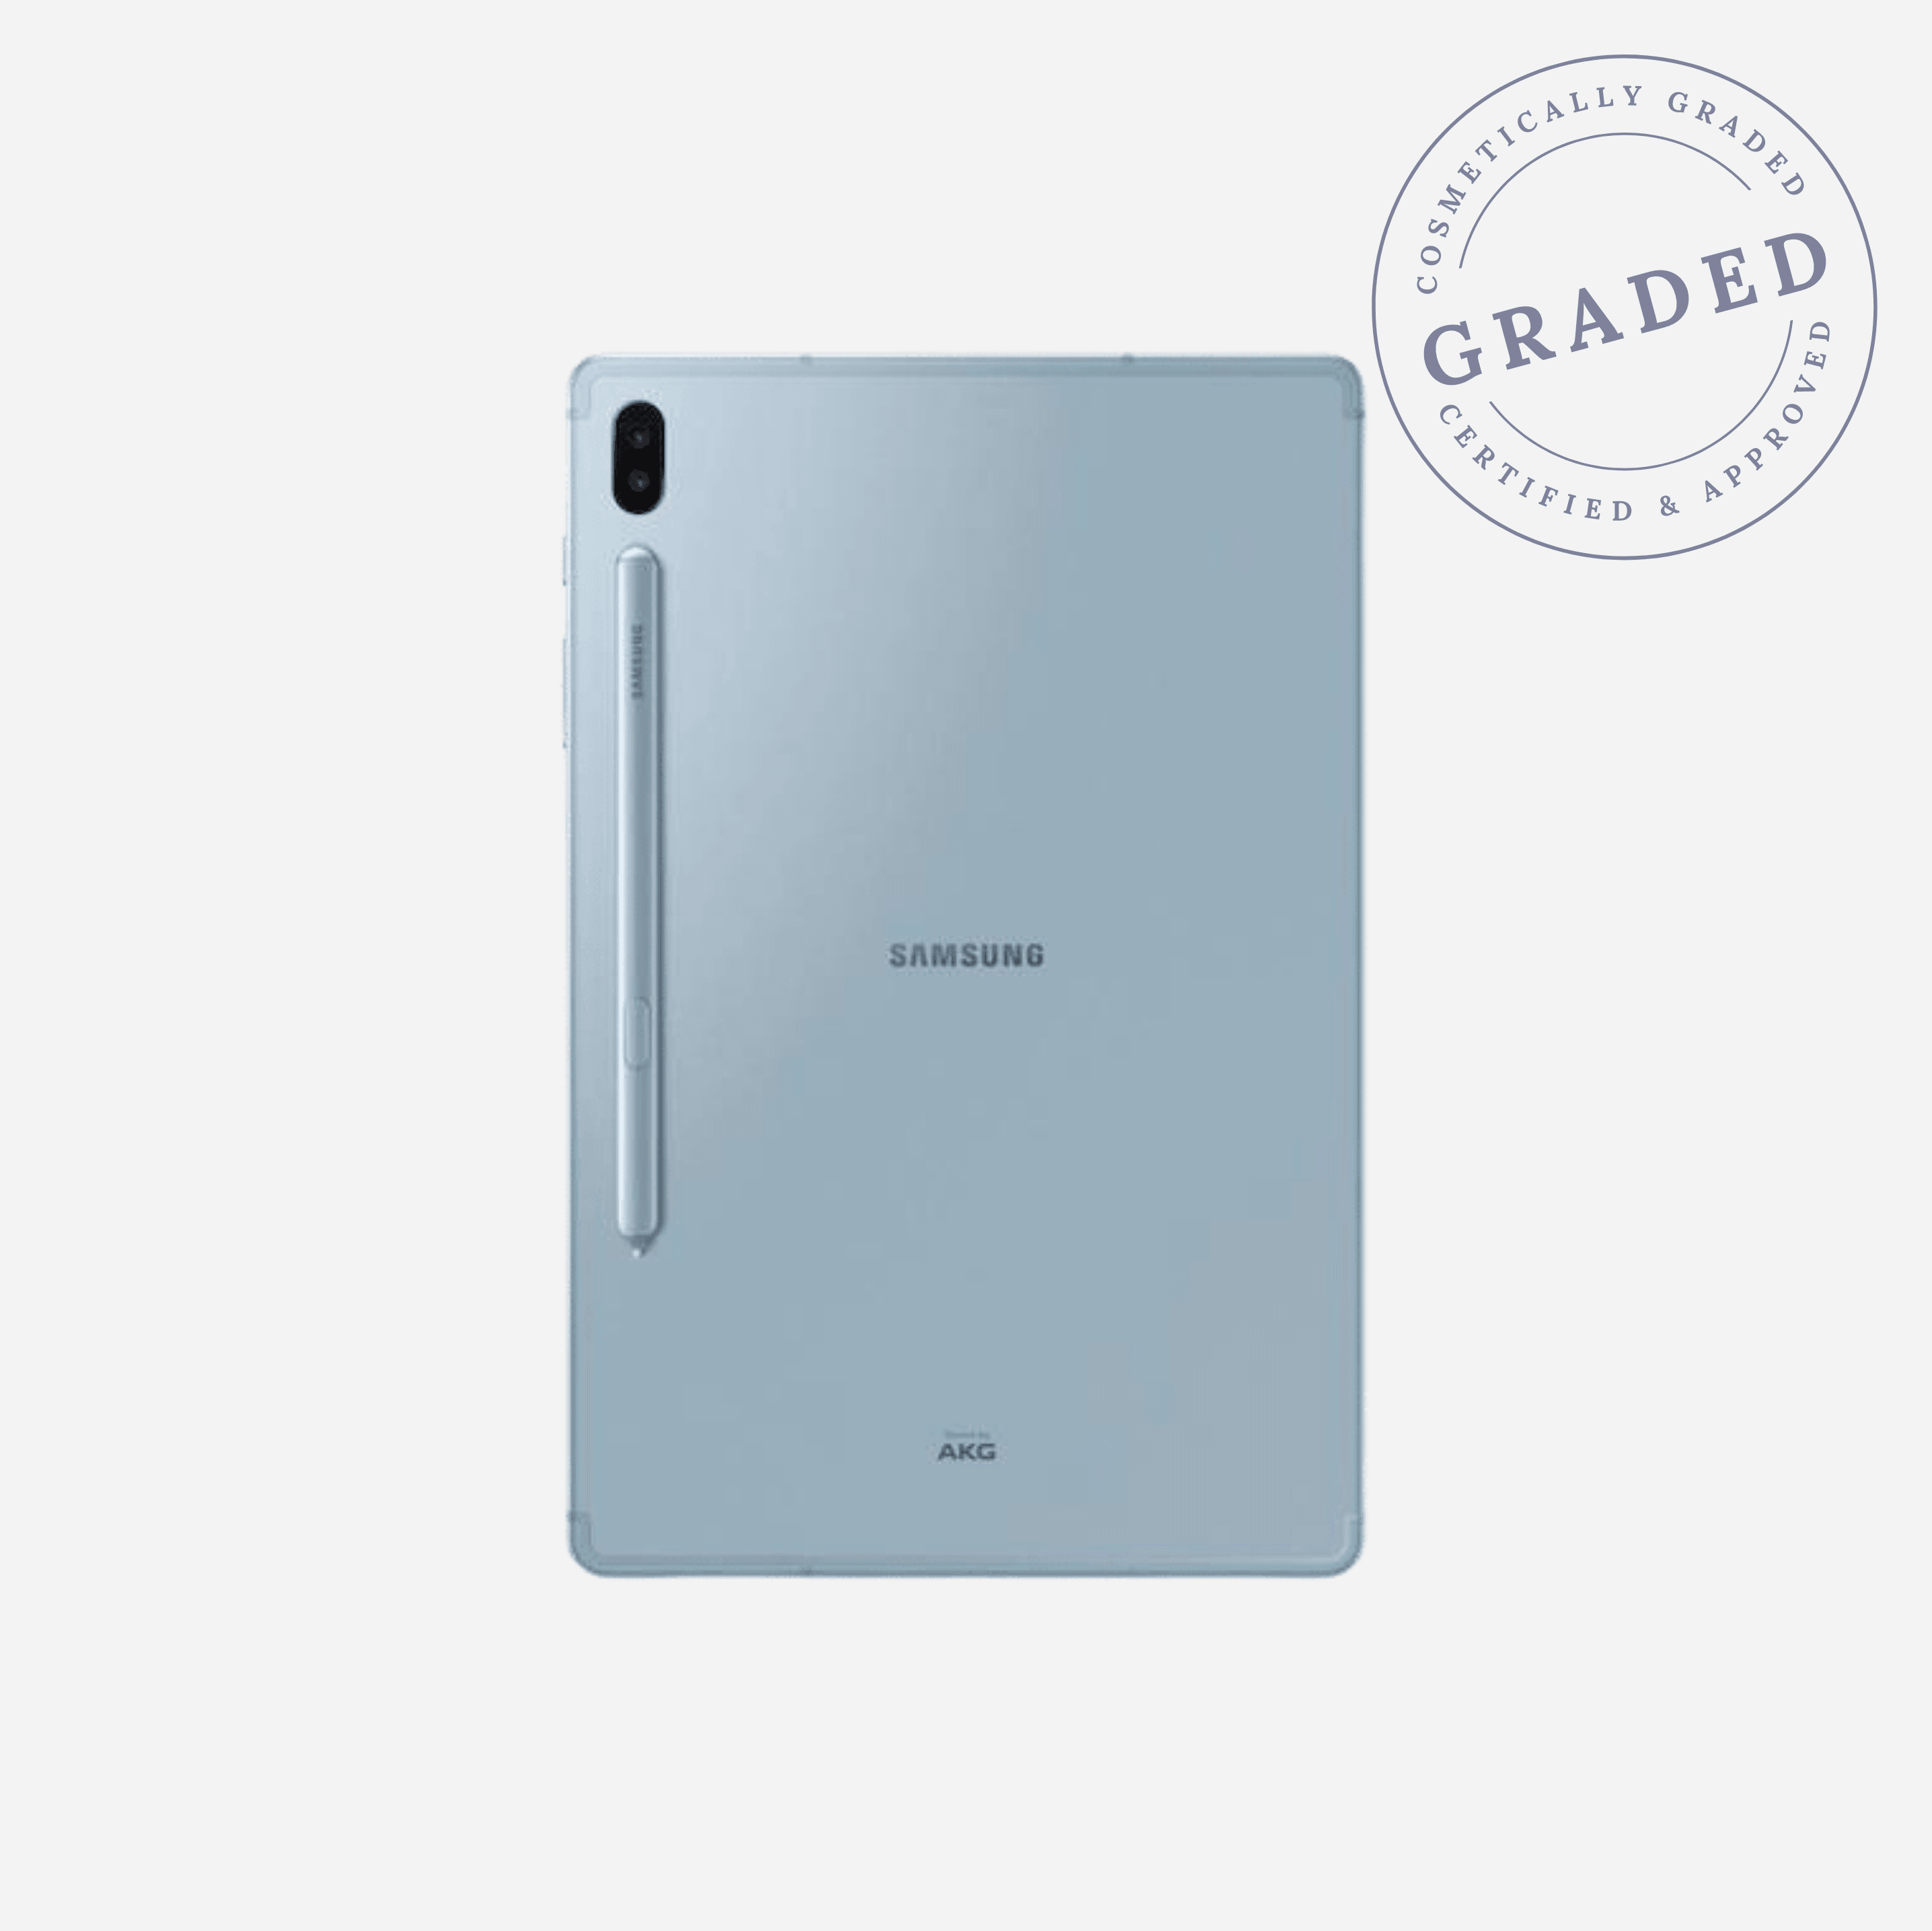 Galaxy Tab S6 | 2019 - (Cloud Blue) - Rfurbnation